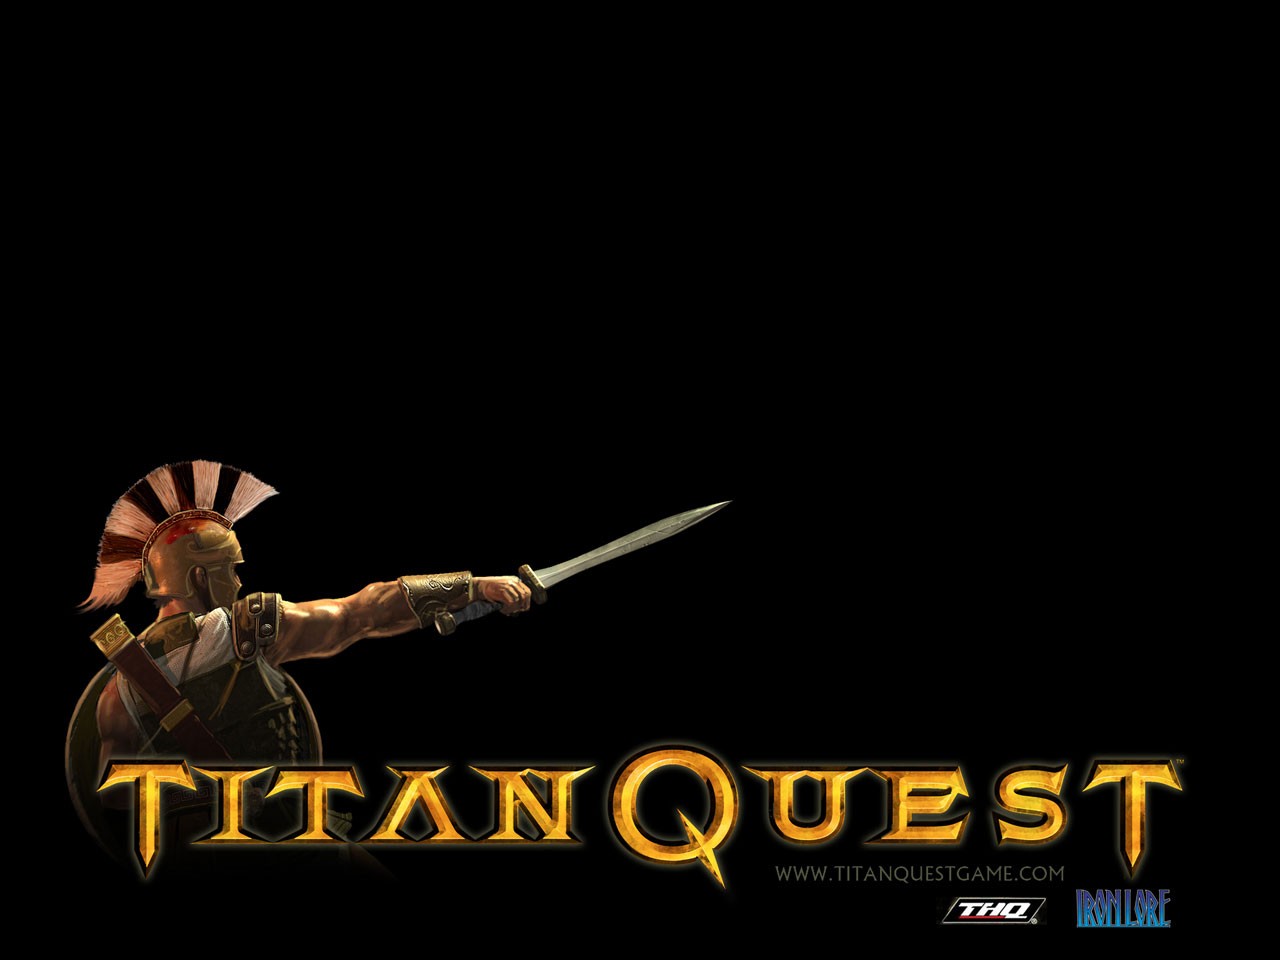 Titan quest steam фото 90